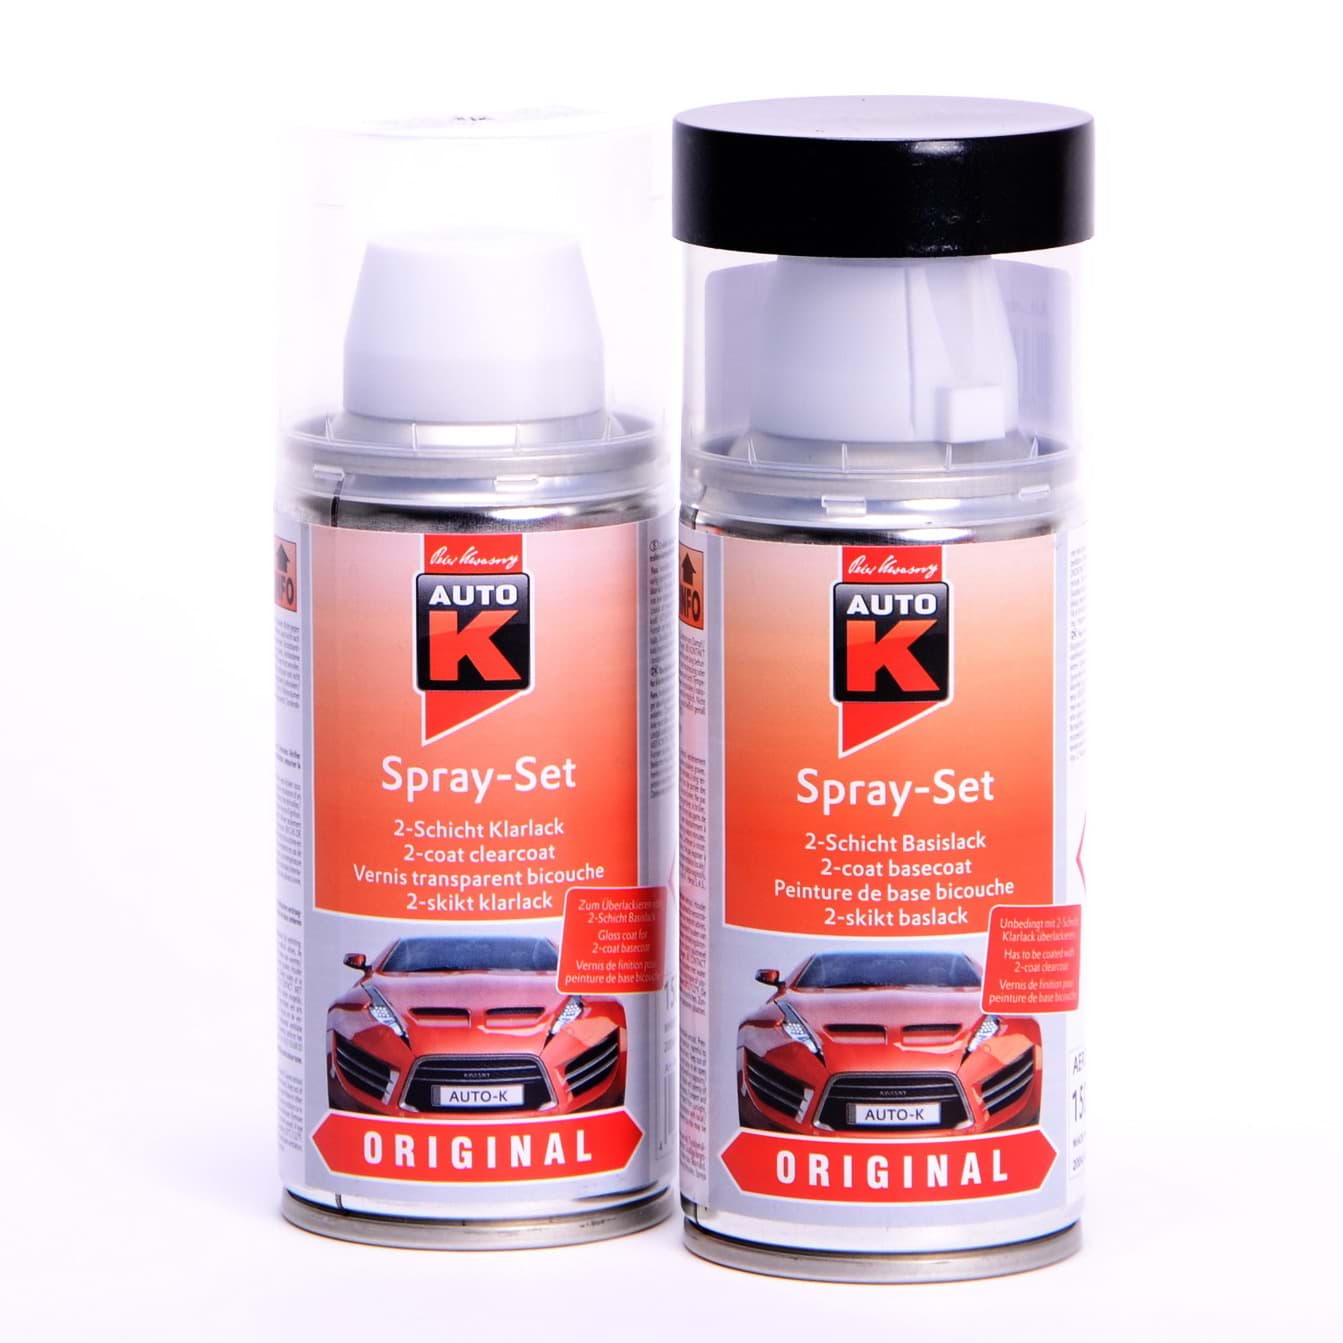 Изображение Auto-K Spray-Set Autolack für Volkswagen, VW, Audi LD7X Platinumgrey met 20956 